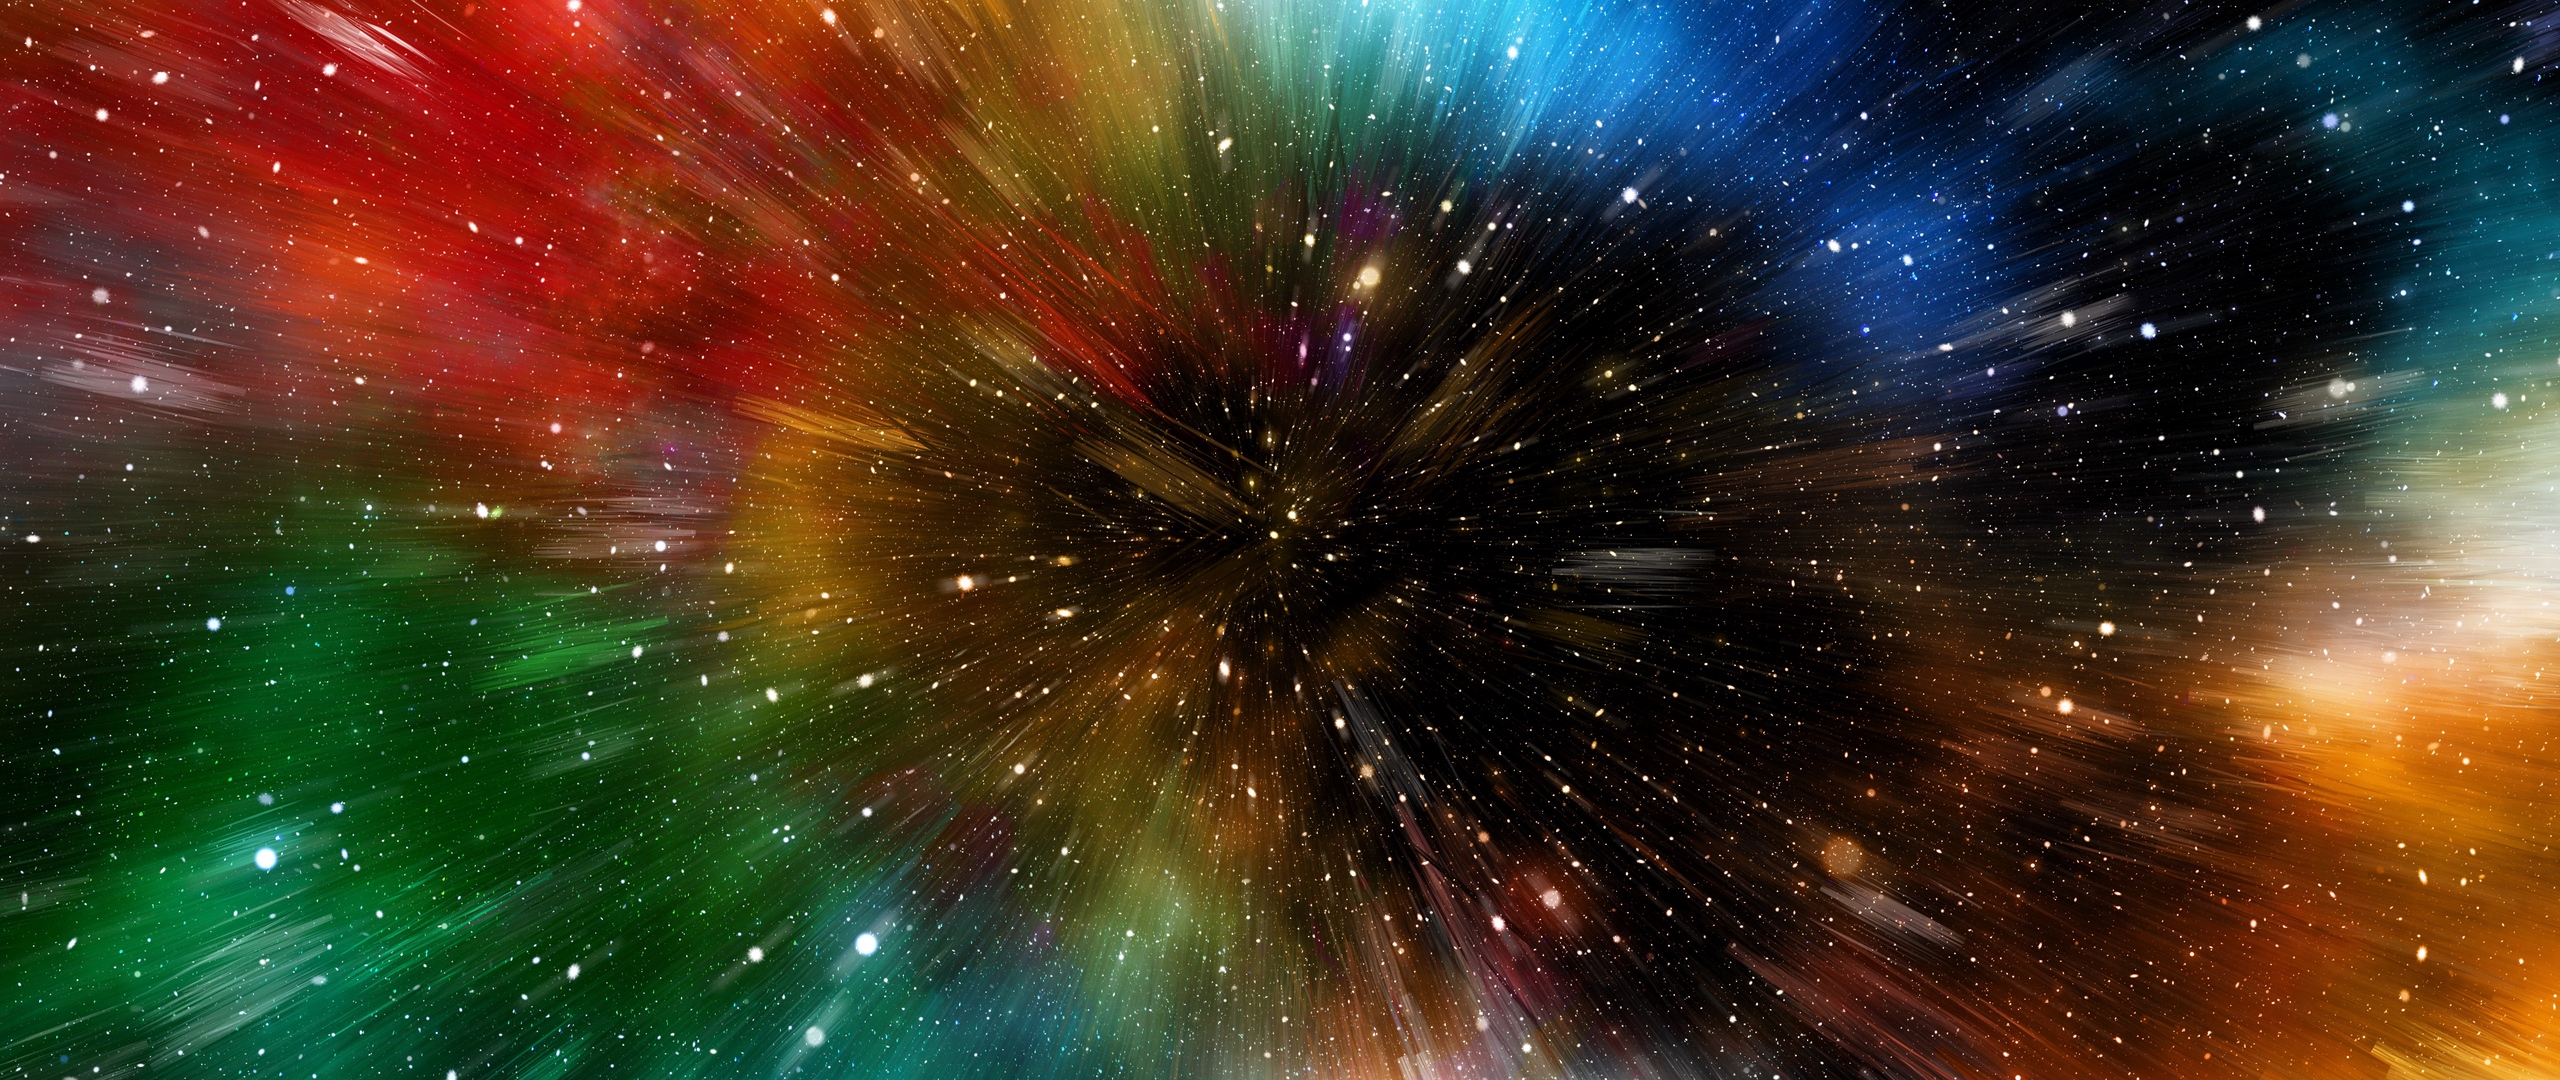 galaxy note 3 wallpaper hd 1080p,natura,cielo,oggetto astronomico,spazio,universo